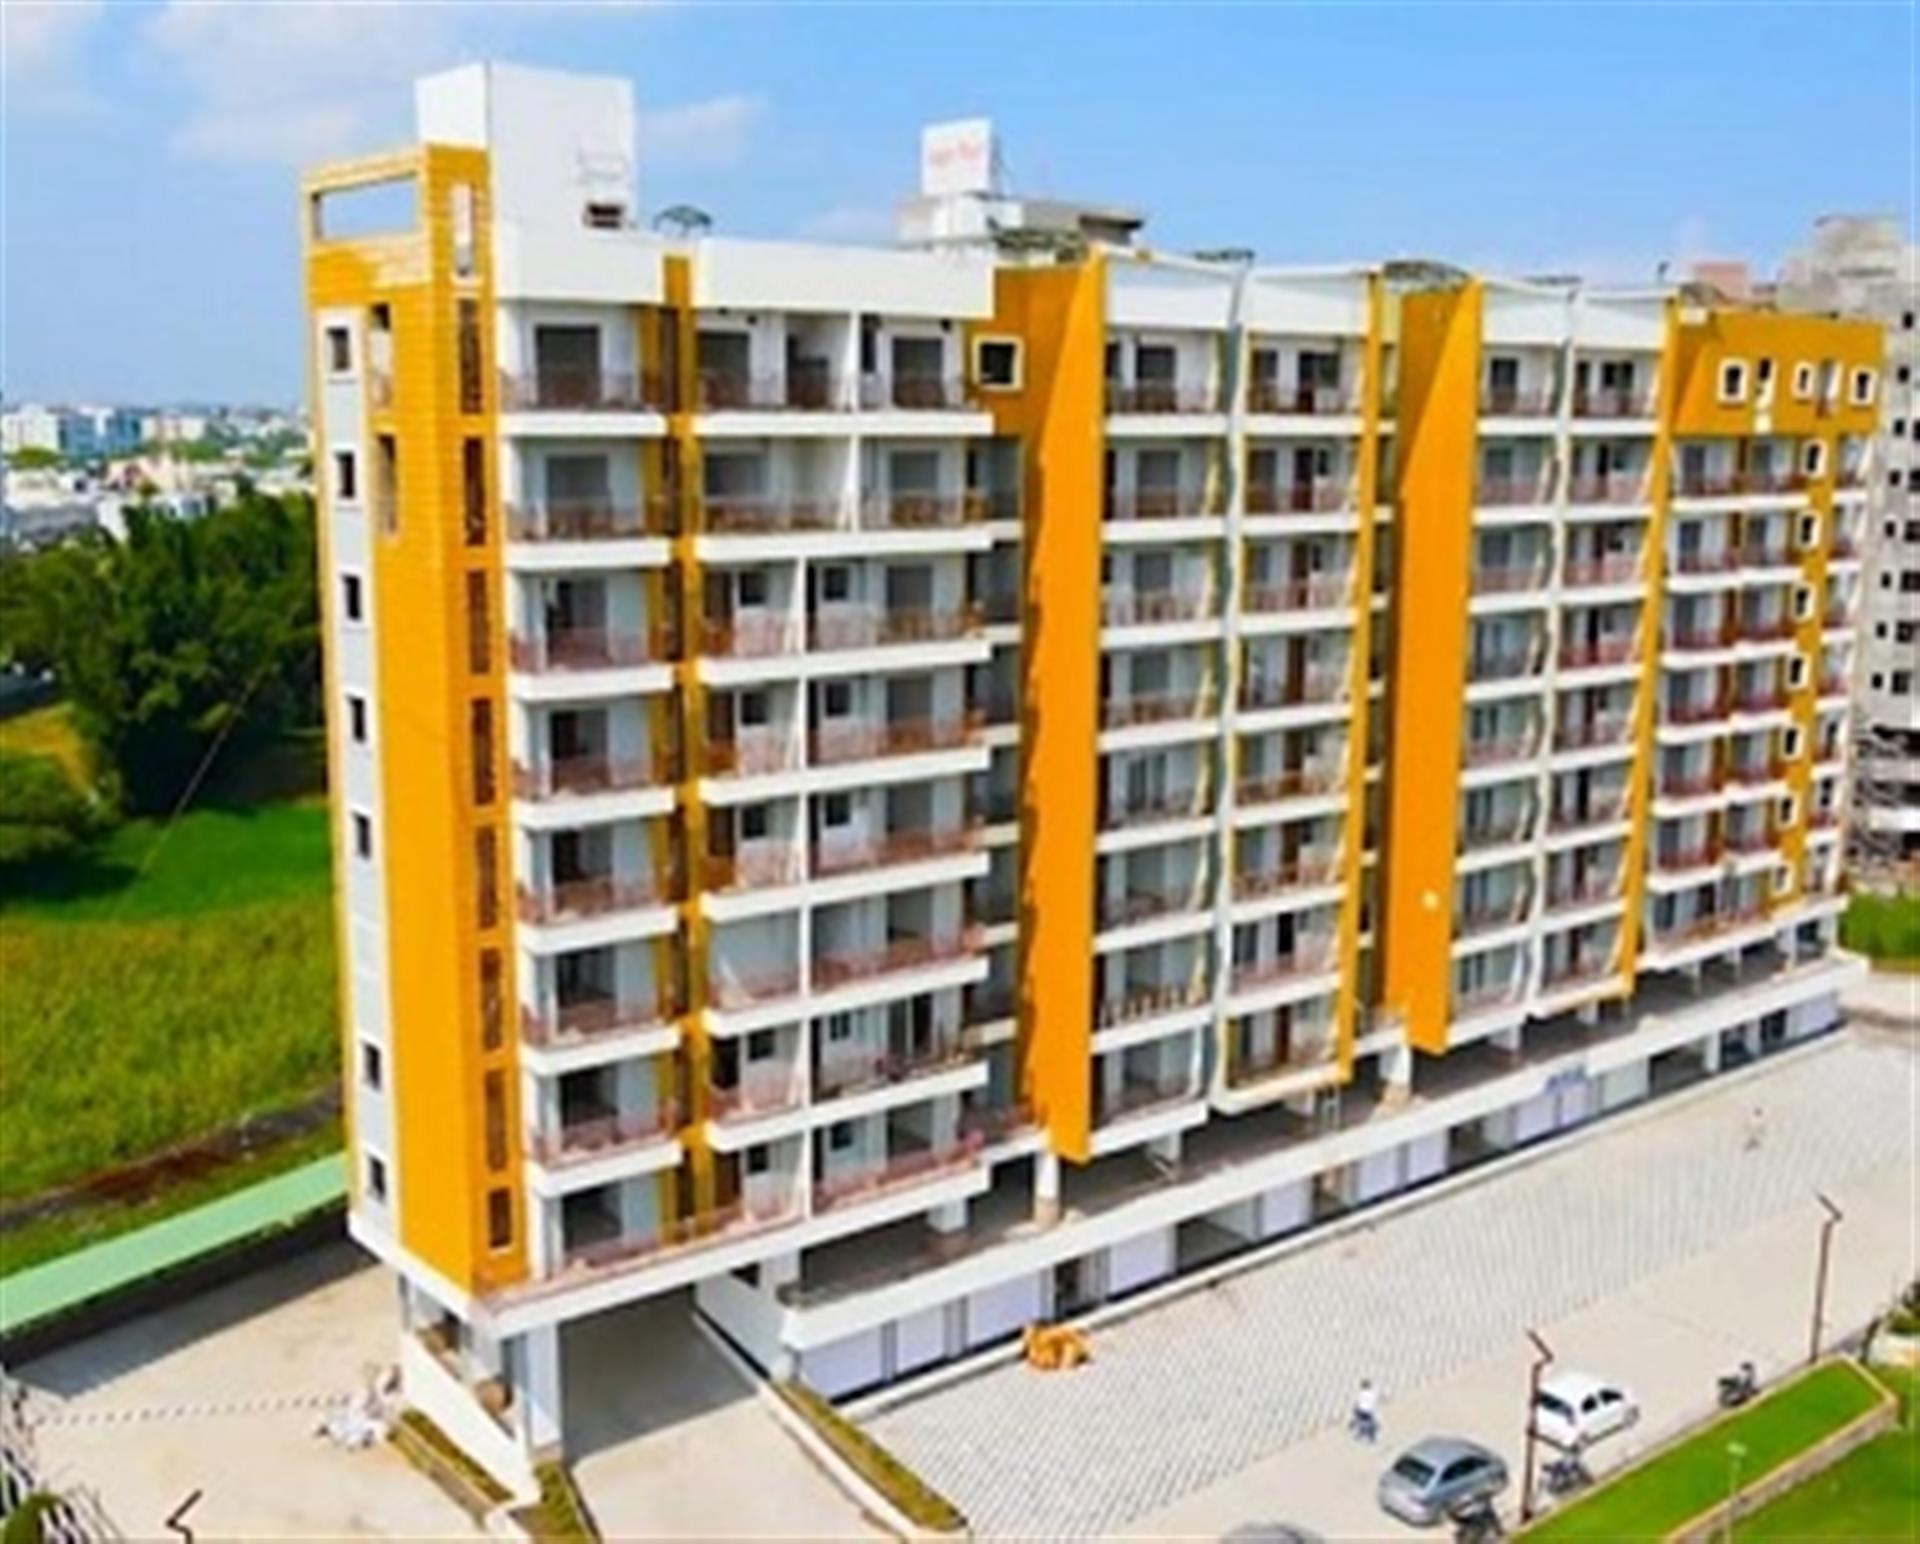 sagar-pearl-phase-2-hoshangabad-road-bhopal-2-3bhk-apartment